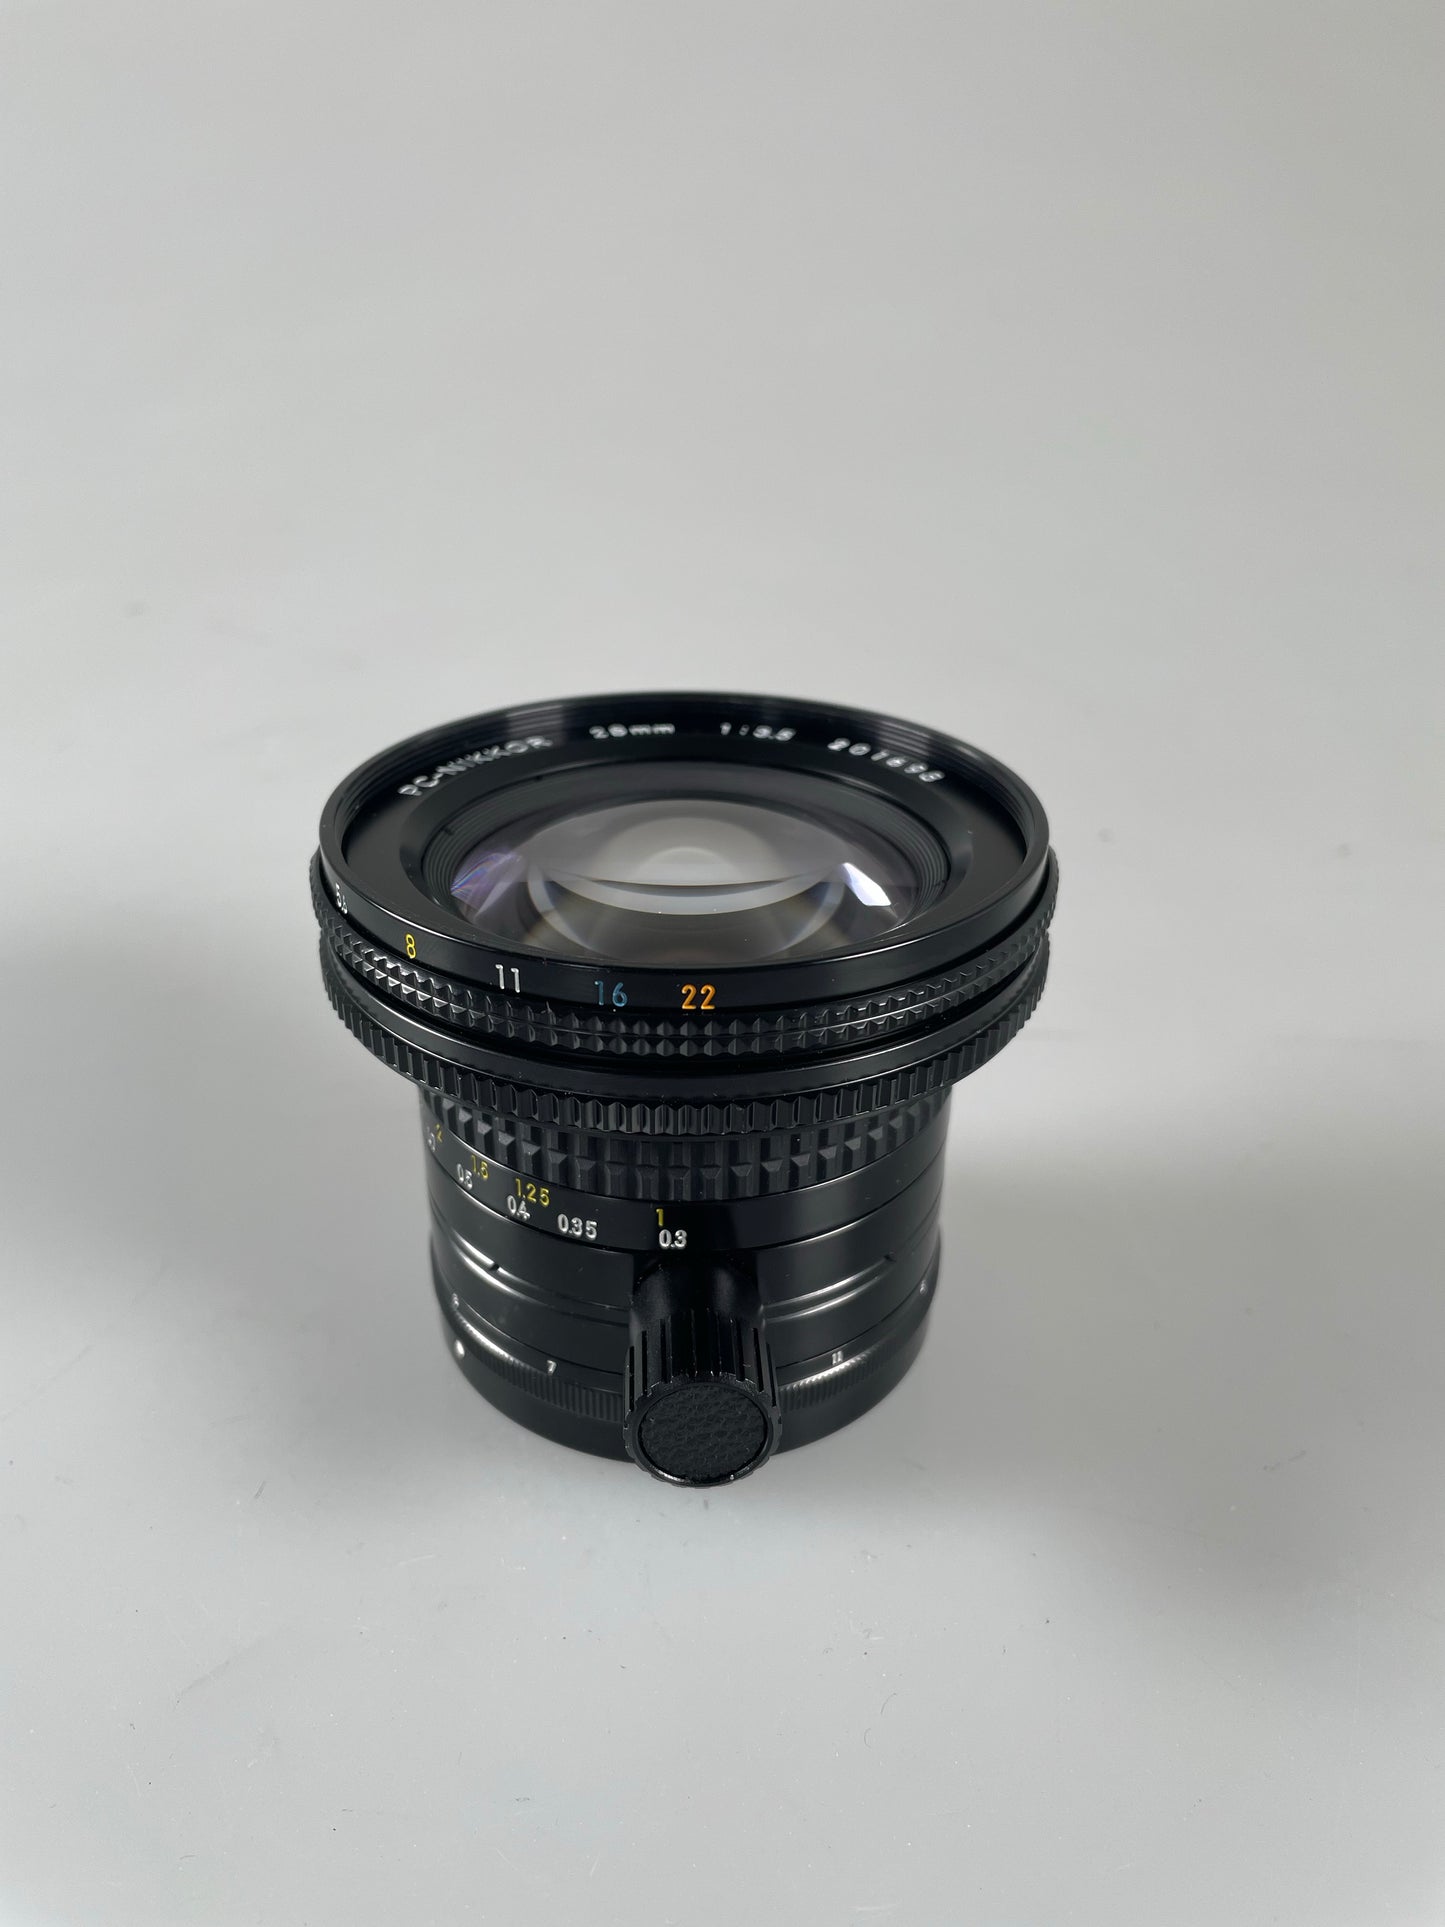 Nikon 28mm f3.5 PC Nikkor Manual Focus Lens